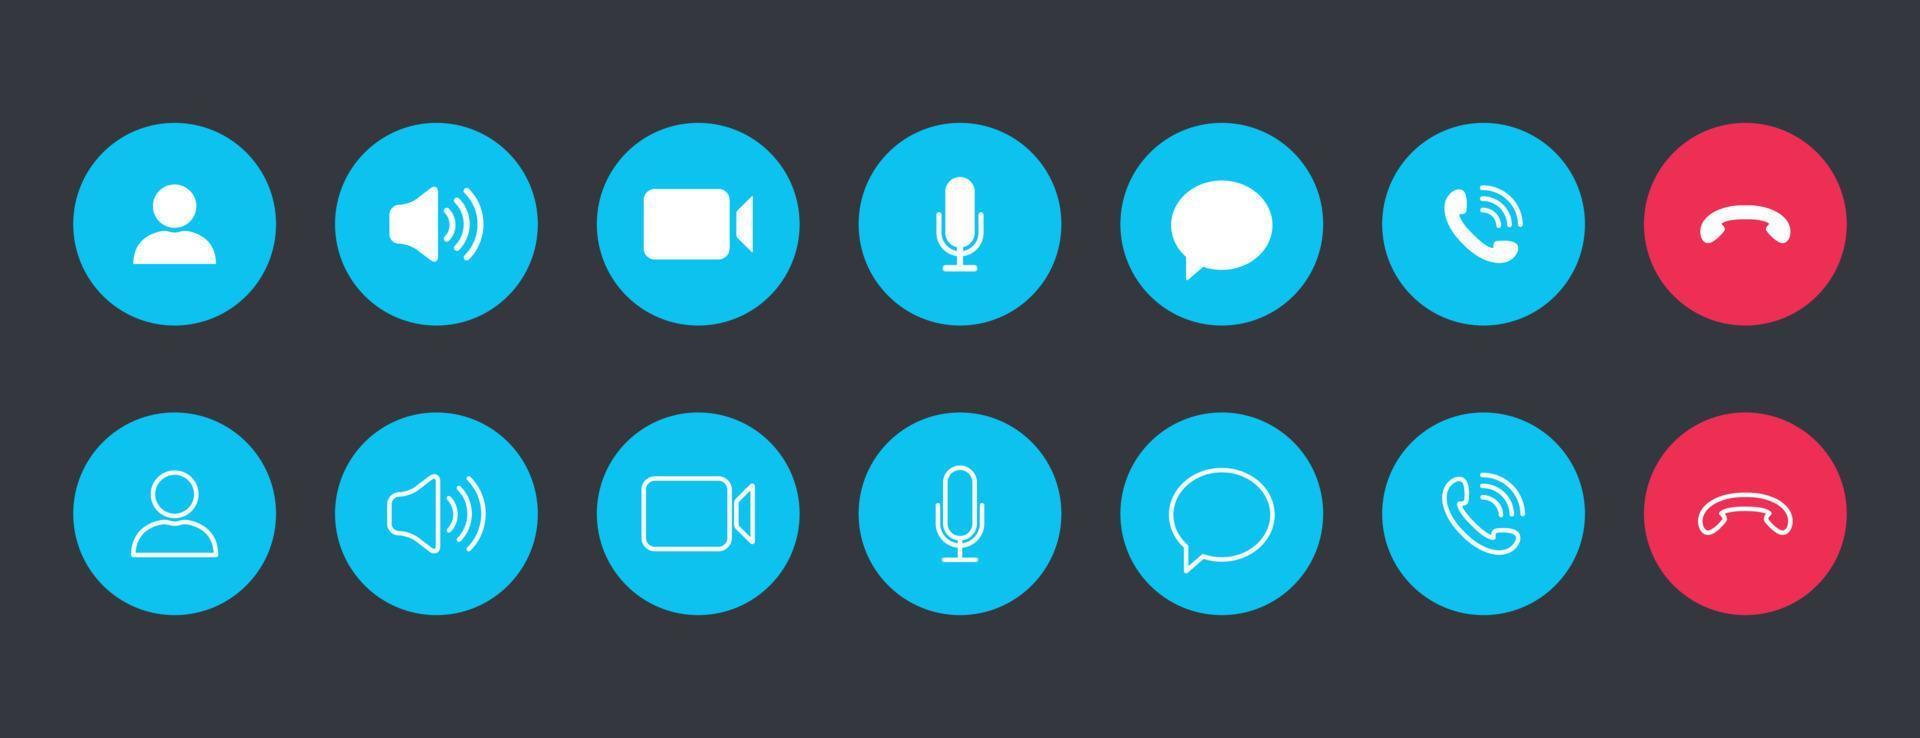 conjunto de iconos de videollamadas. colecciones de botones blancos para videoconferencia en línea en círculo azul. vector